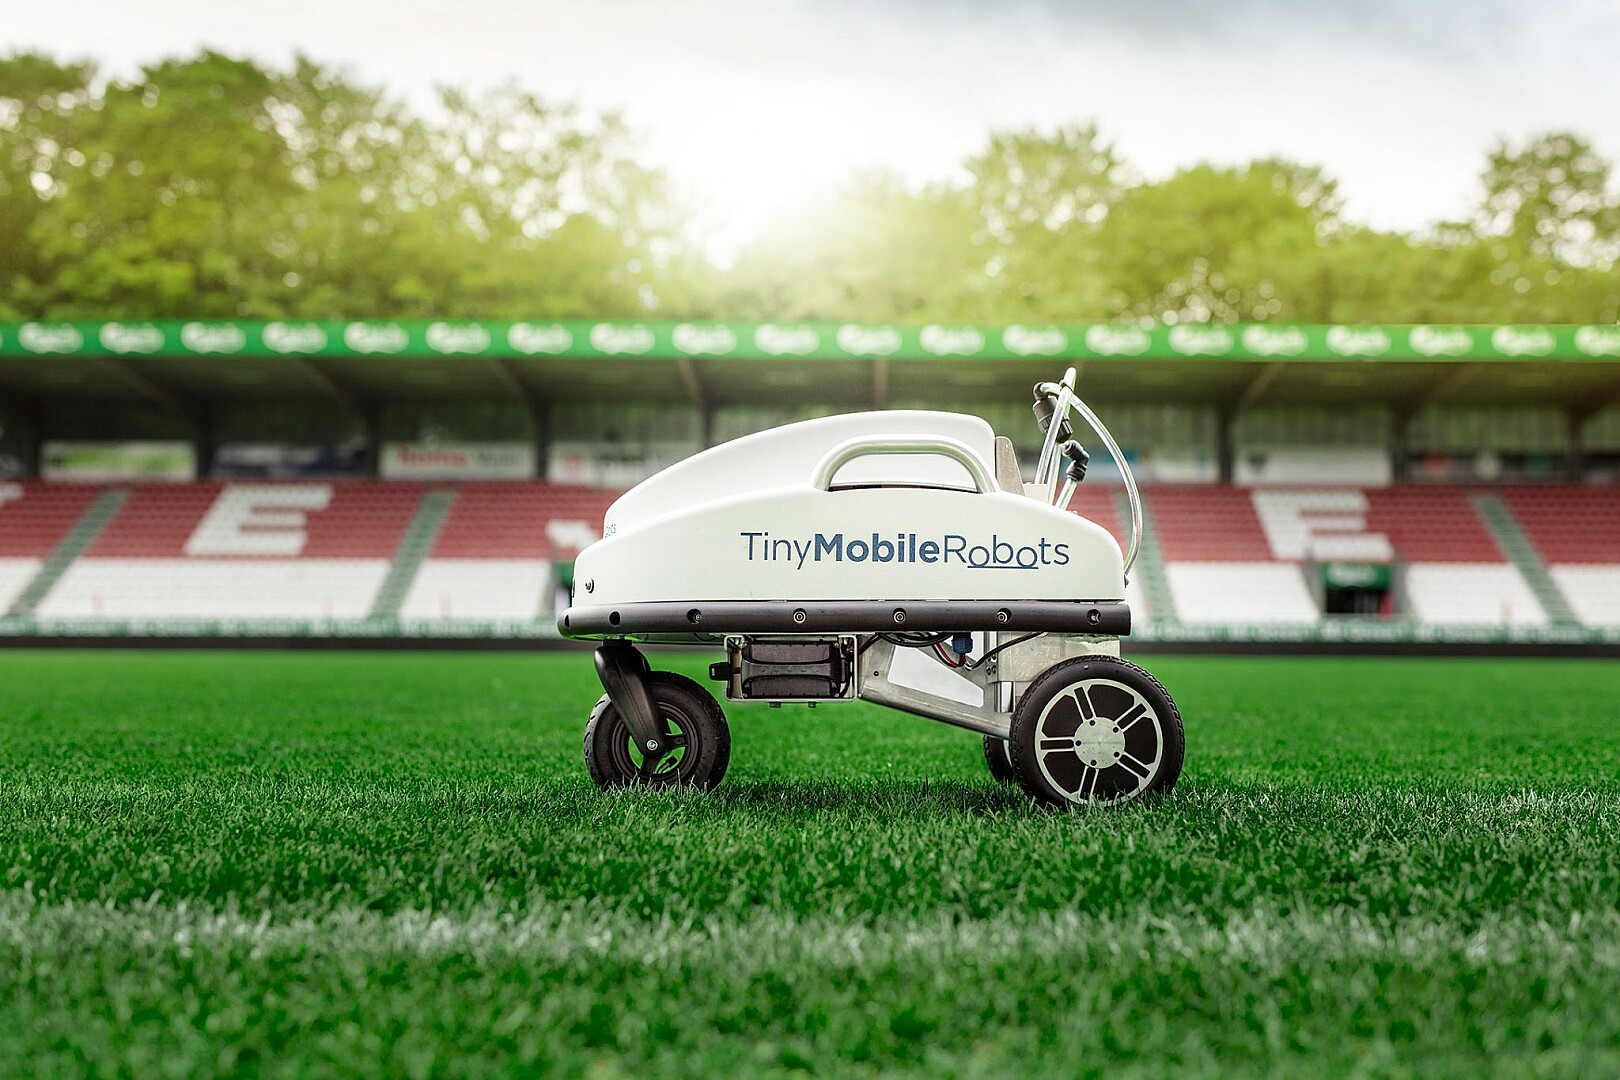 TinyMobileRobots maakt robotbelijning betaalbaar voor kleinere clubs